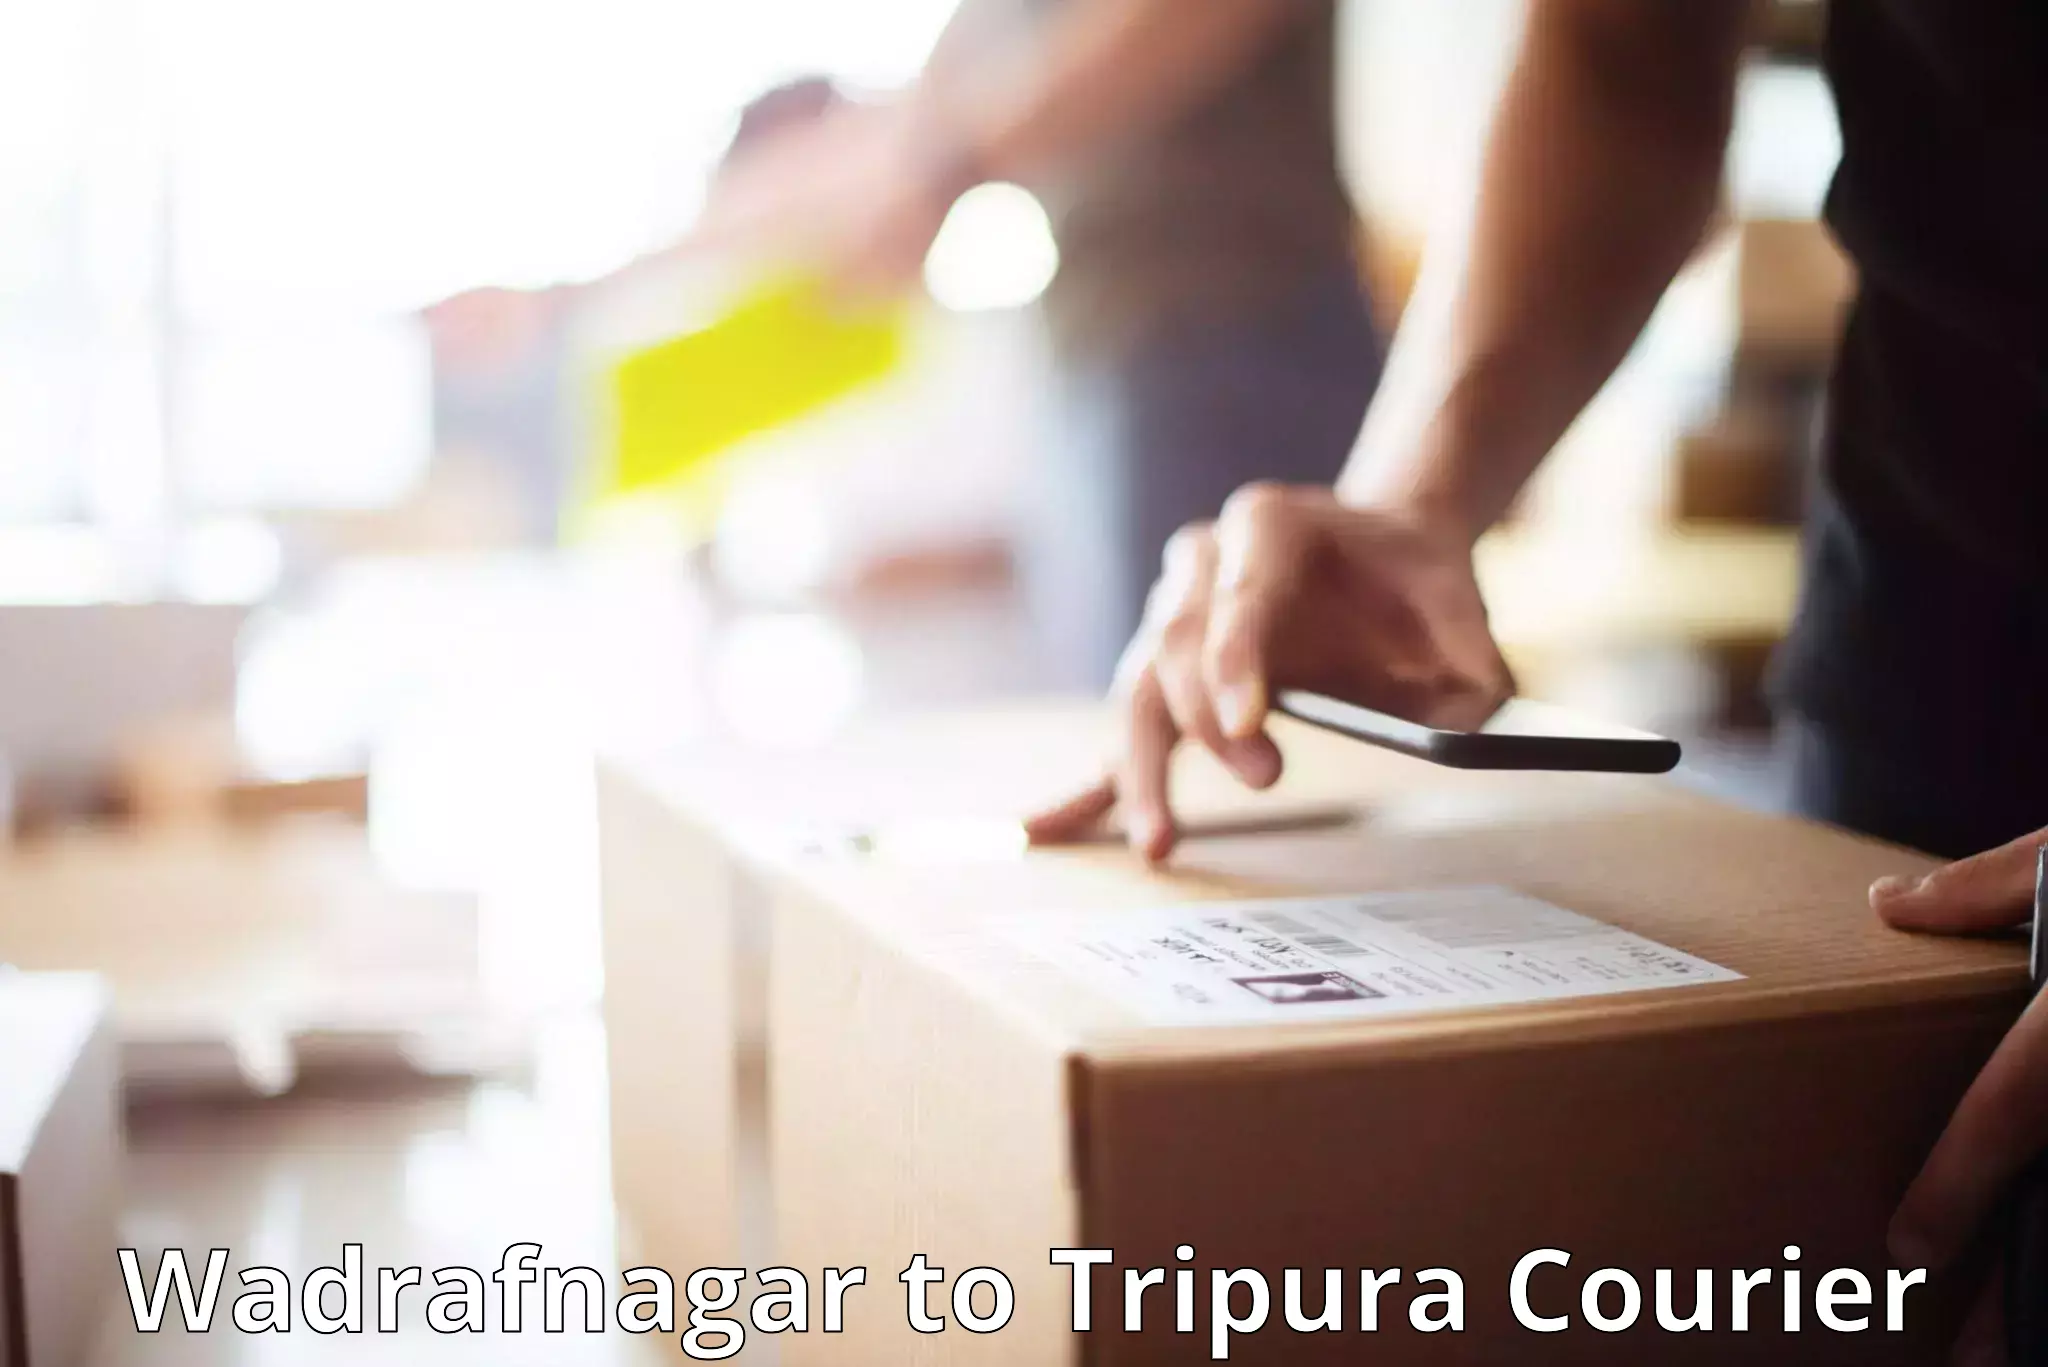 Luggage shipment processing Wadrafnagar to West Tripura